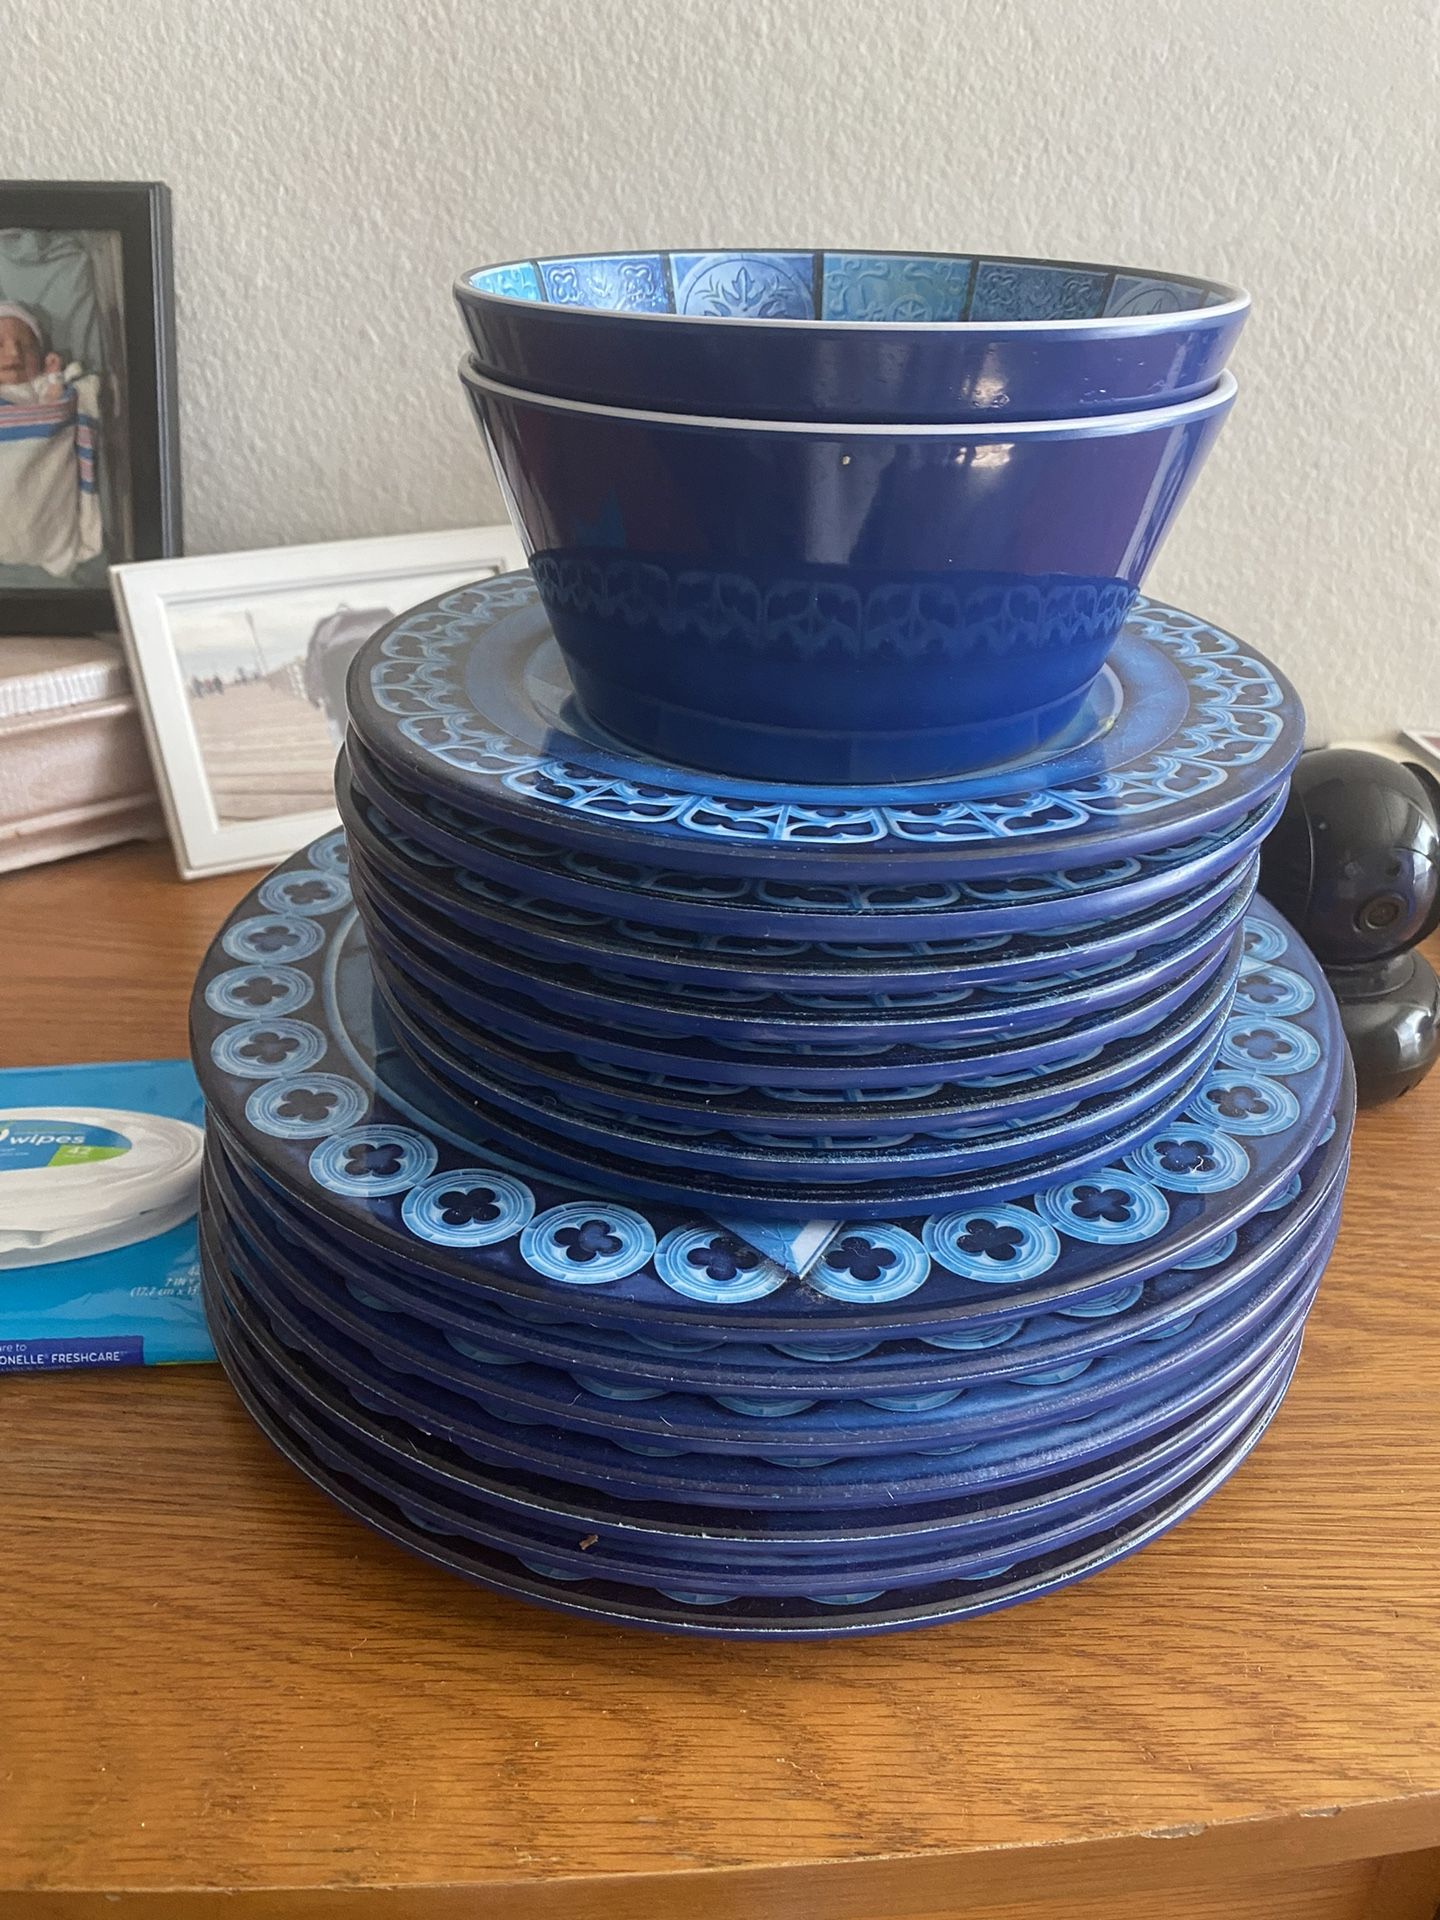 Disney ceramic Dishes